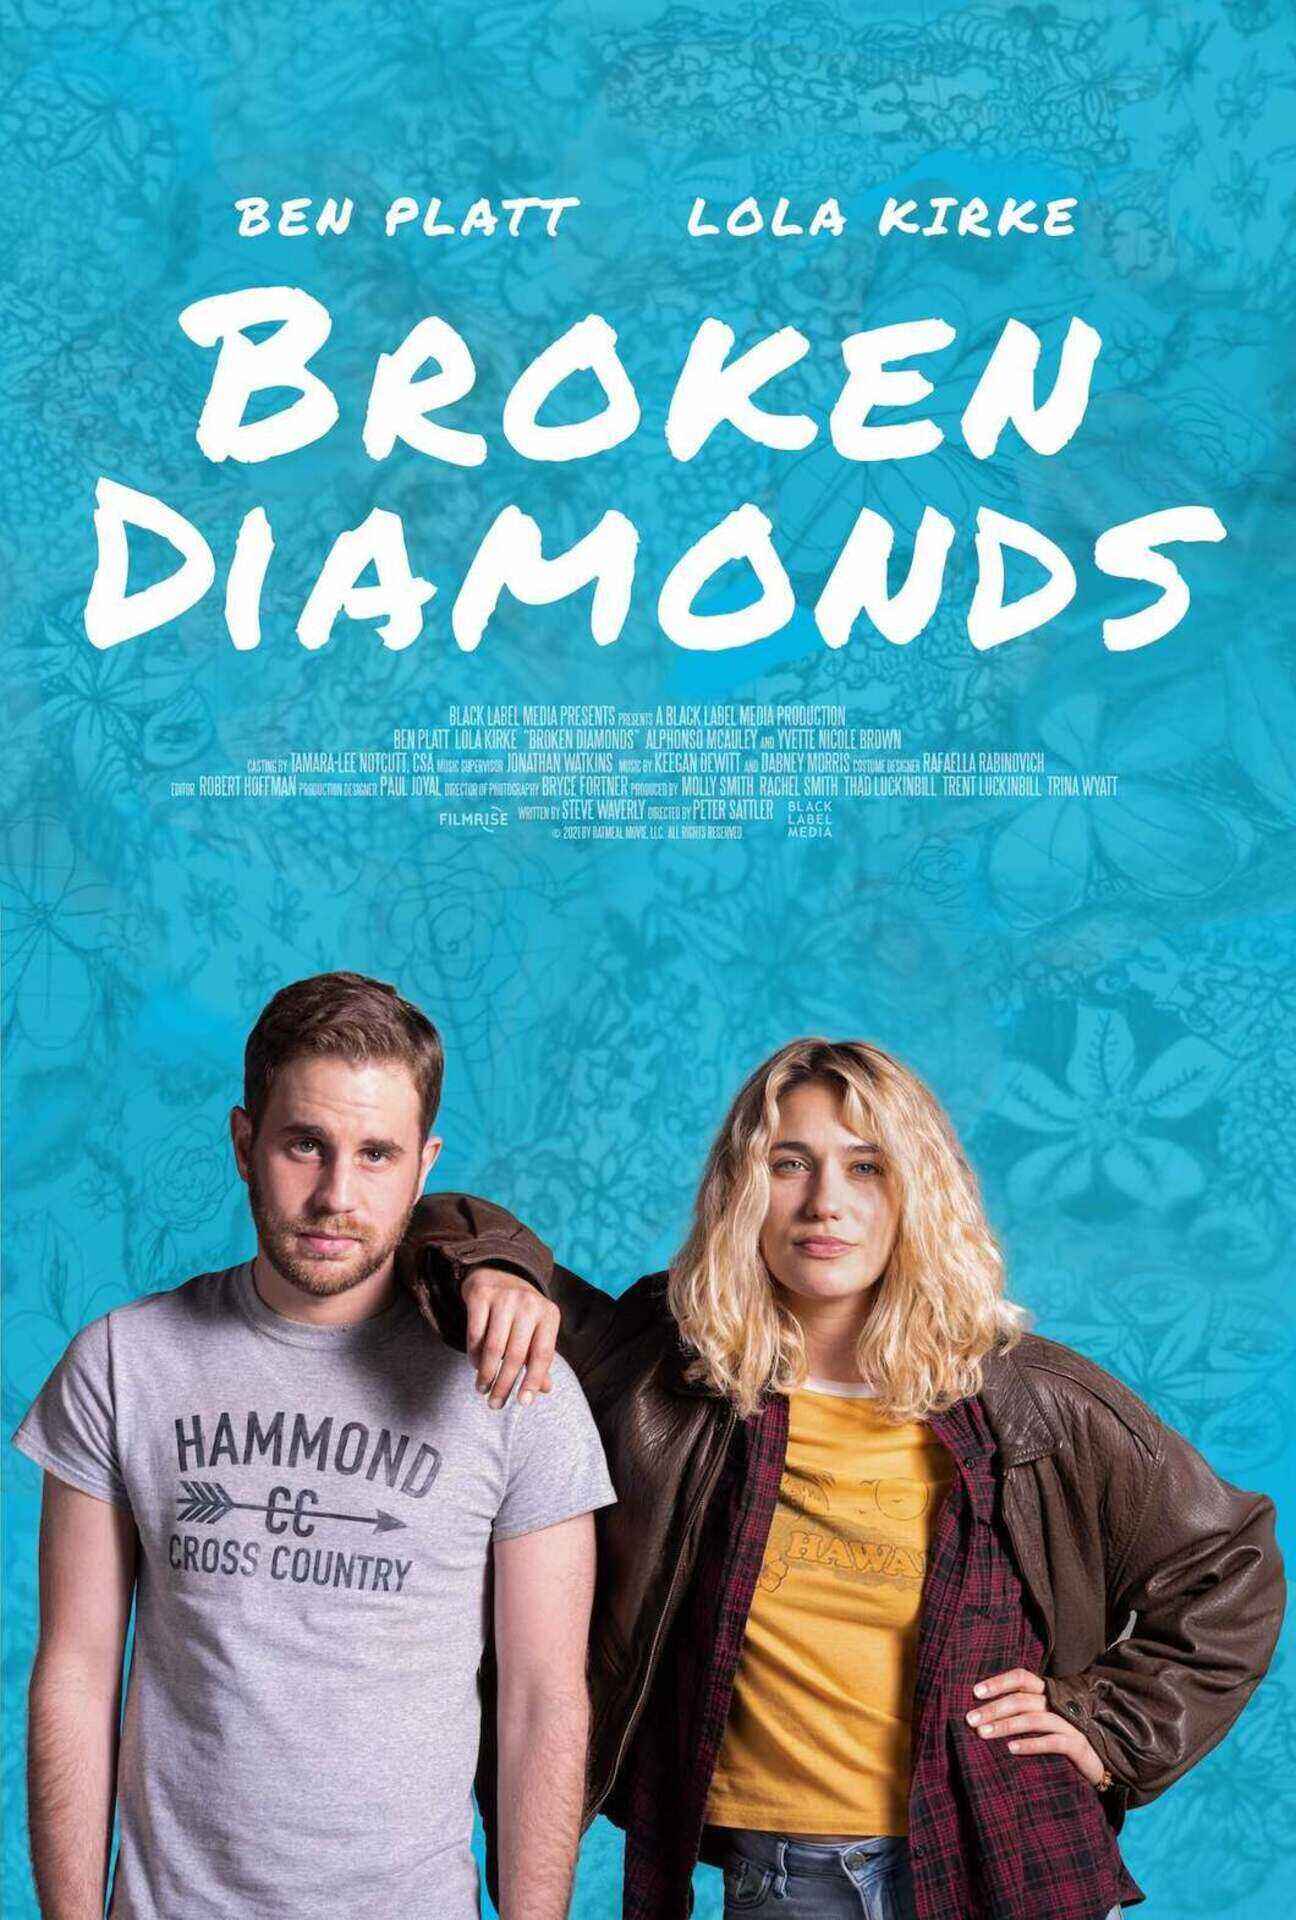 Ben Platt and Lola Kirke in Broken Diamonds